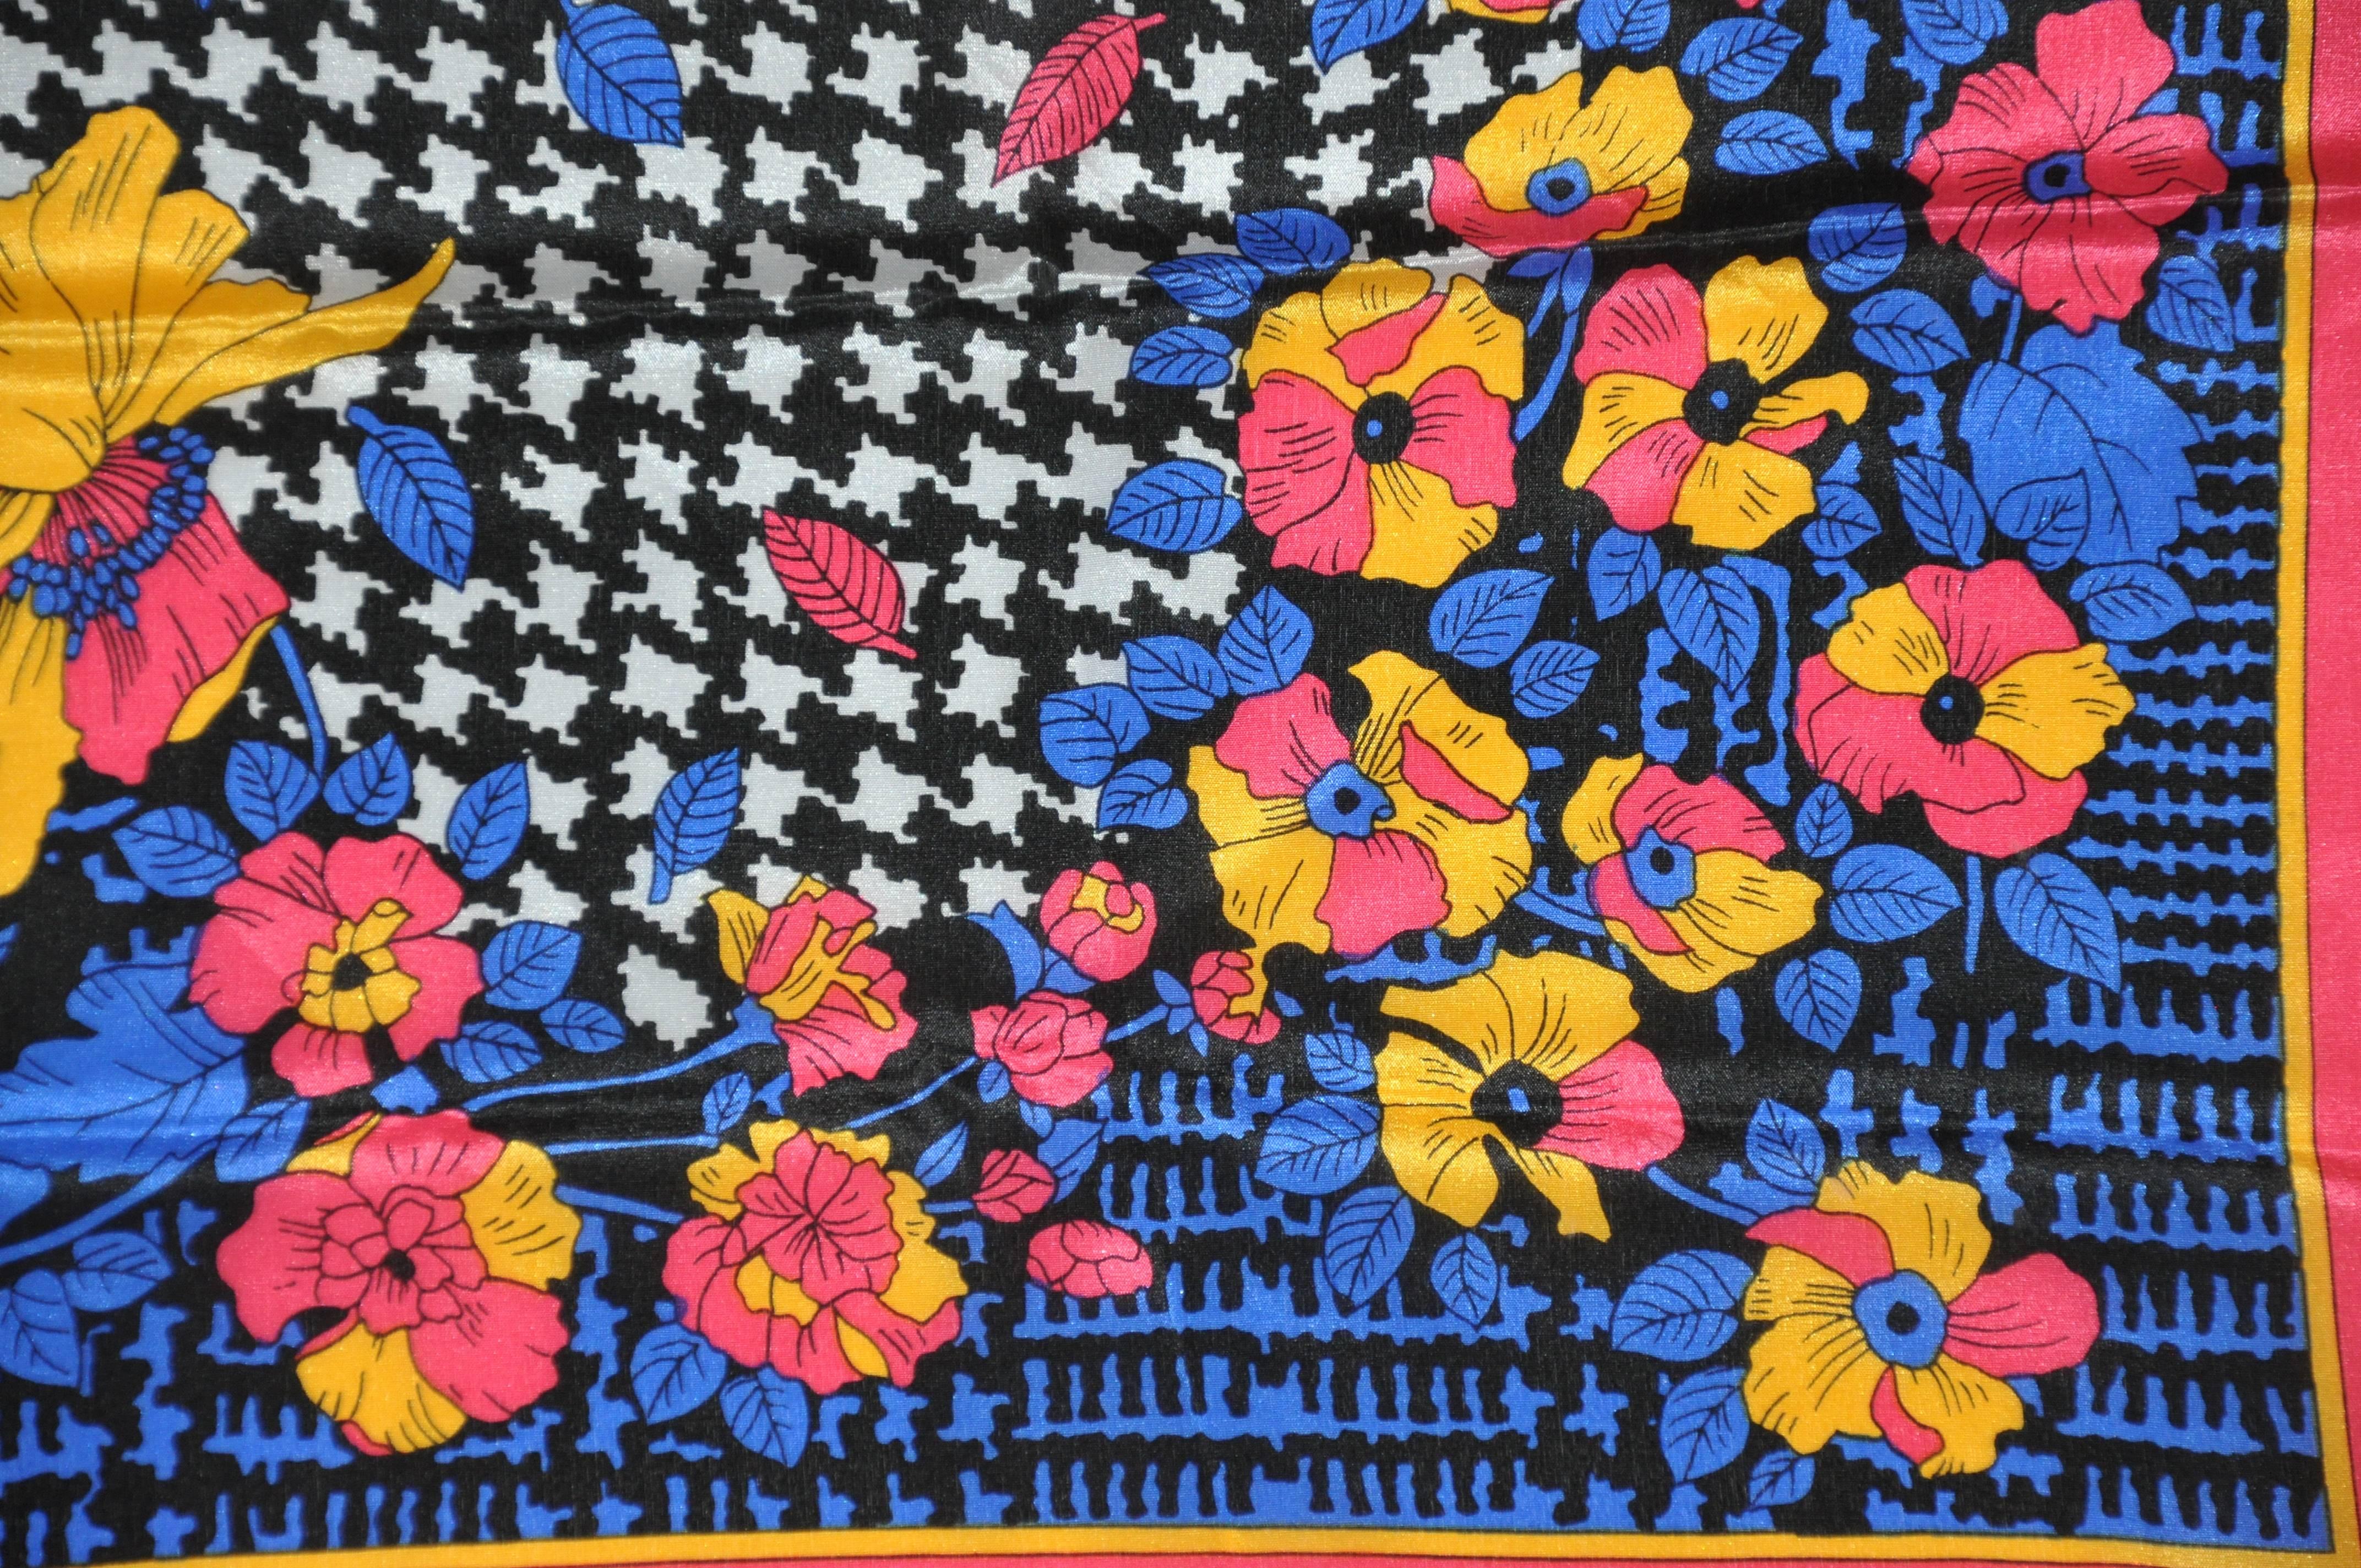        Cette écharpe en soie merveilleusement fantaisiste, avec une bordure fuchsia chaude entourant des fleurs multicolores et un centre noir et blanc, mesure 31 pouces sur 32 pouces. Fabriqué au Japon.     